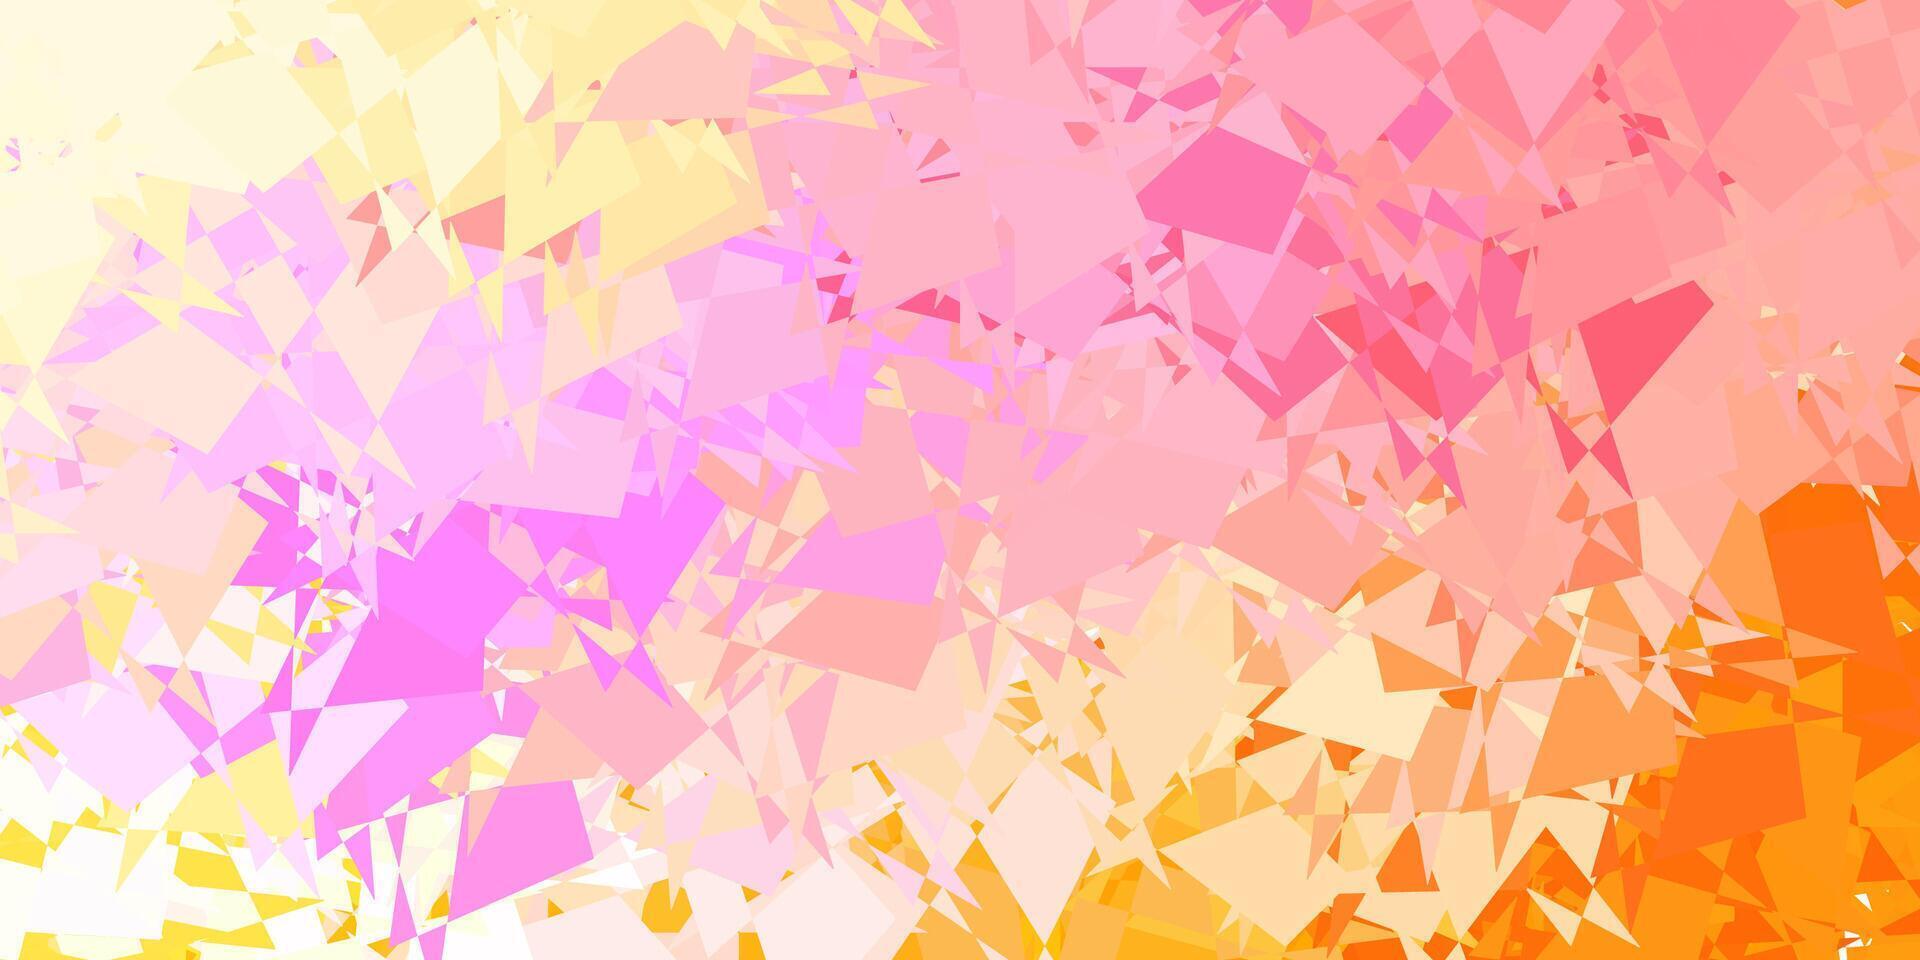 ljus rosa, gul textur med memphis former. vektor